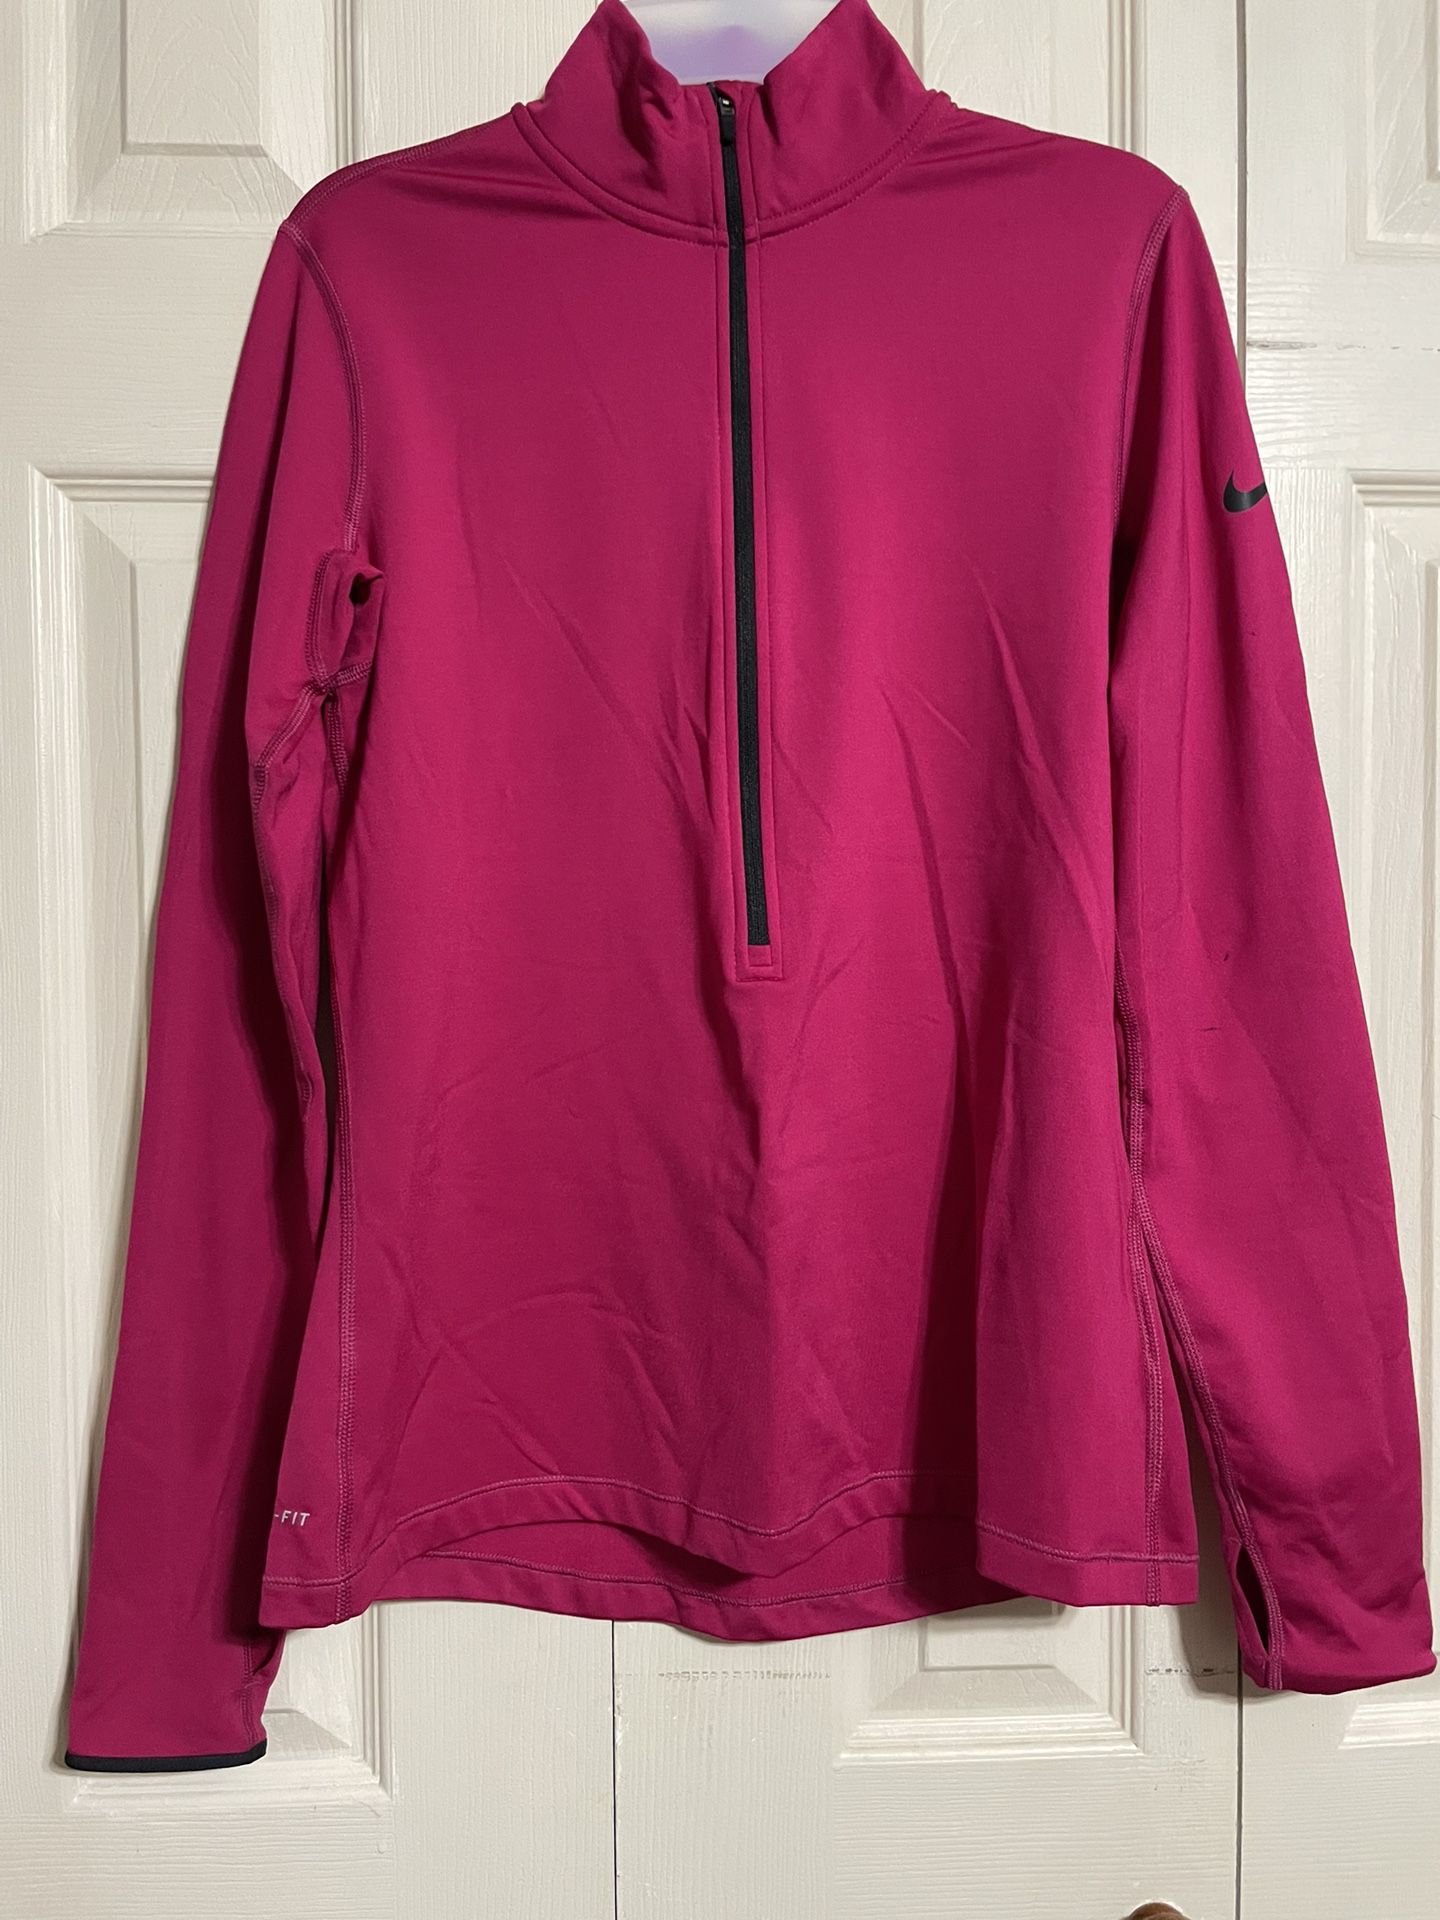 Women’s Nike Pro Dri Fit Pullover Track Jacket 1/2 Zip Mock Neck Fleece Lined Size Large 